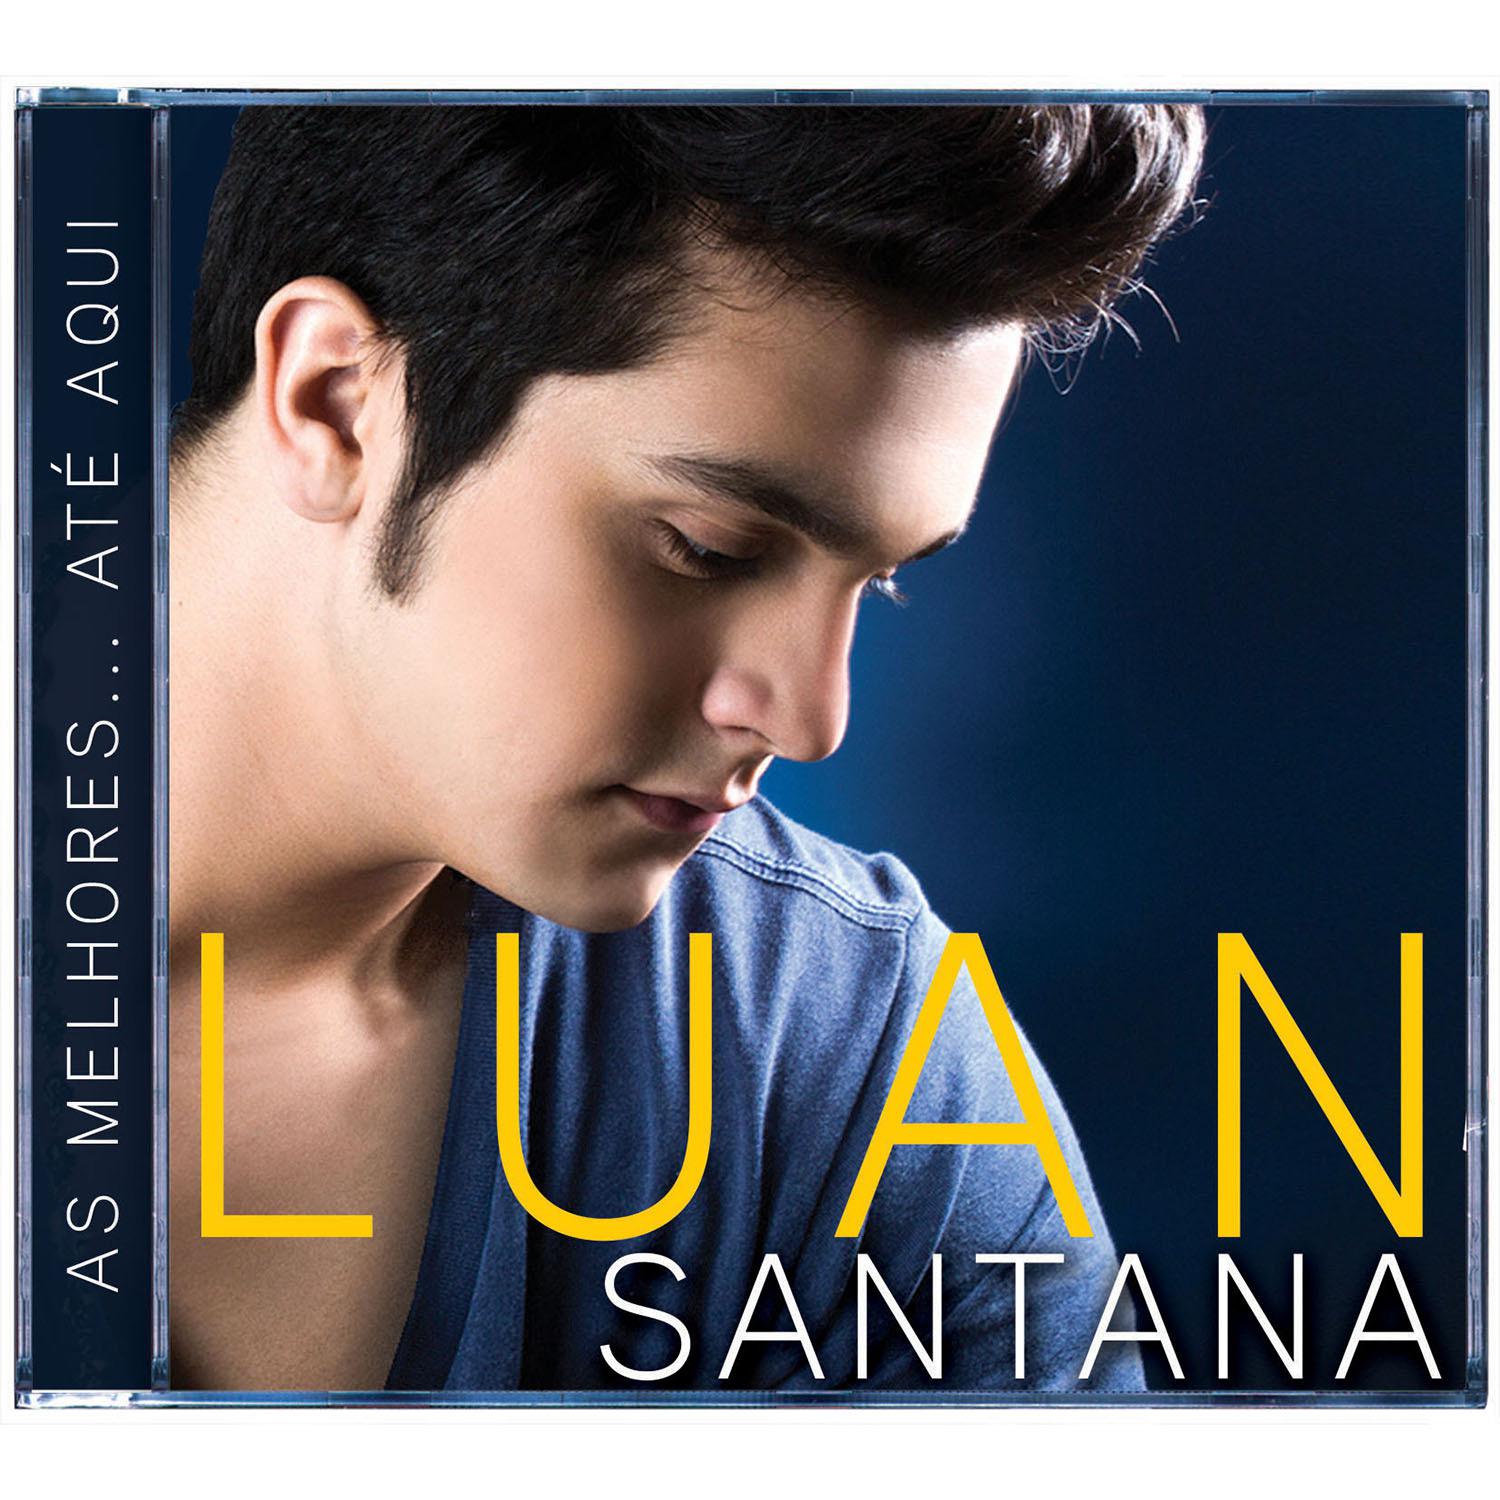 CD Luan Santana - As Melhores ... Até Aqui (Incluindo O Amor Coloriu) é bom? Vale a pena?